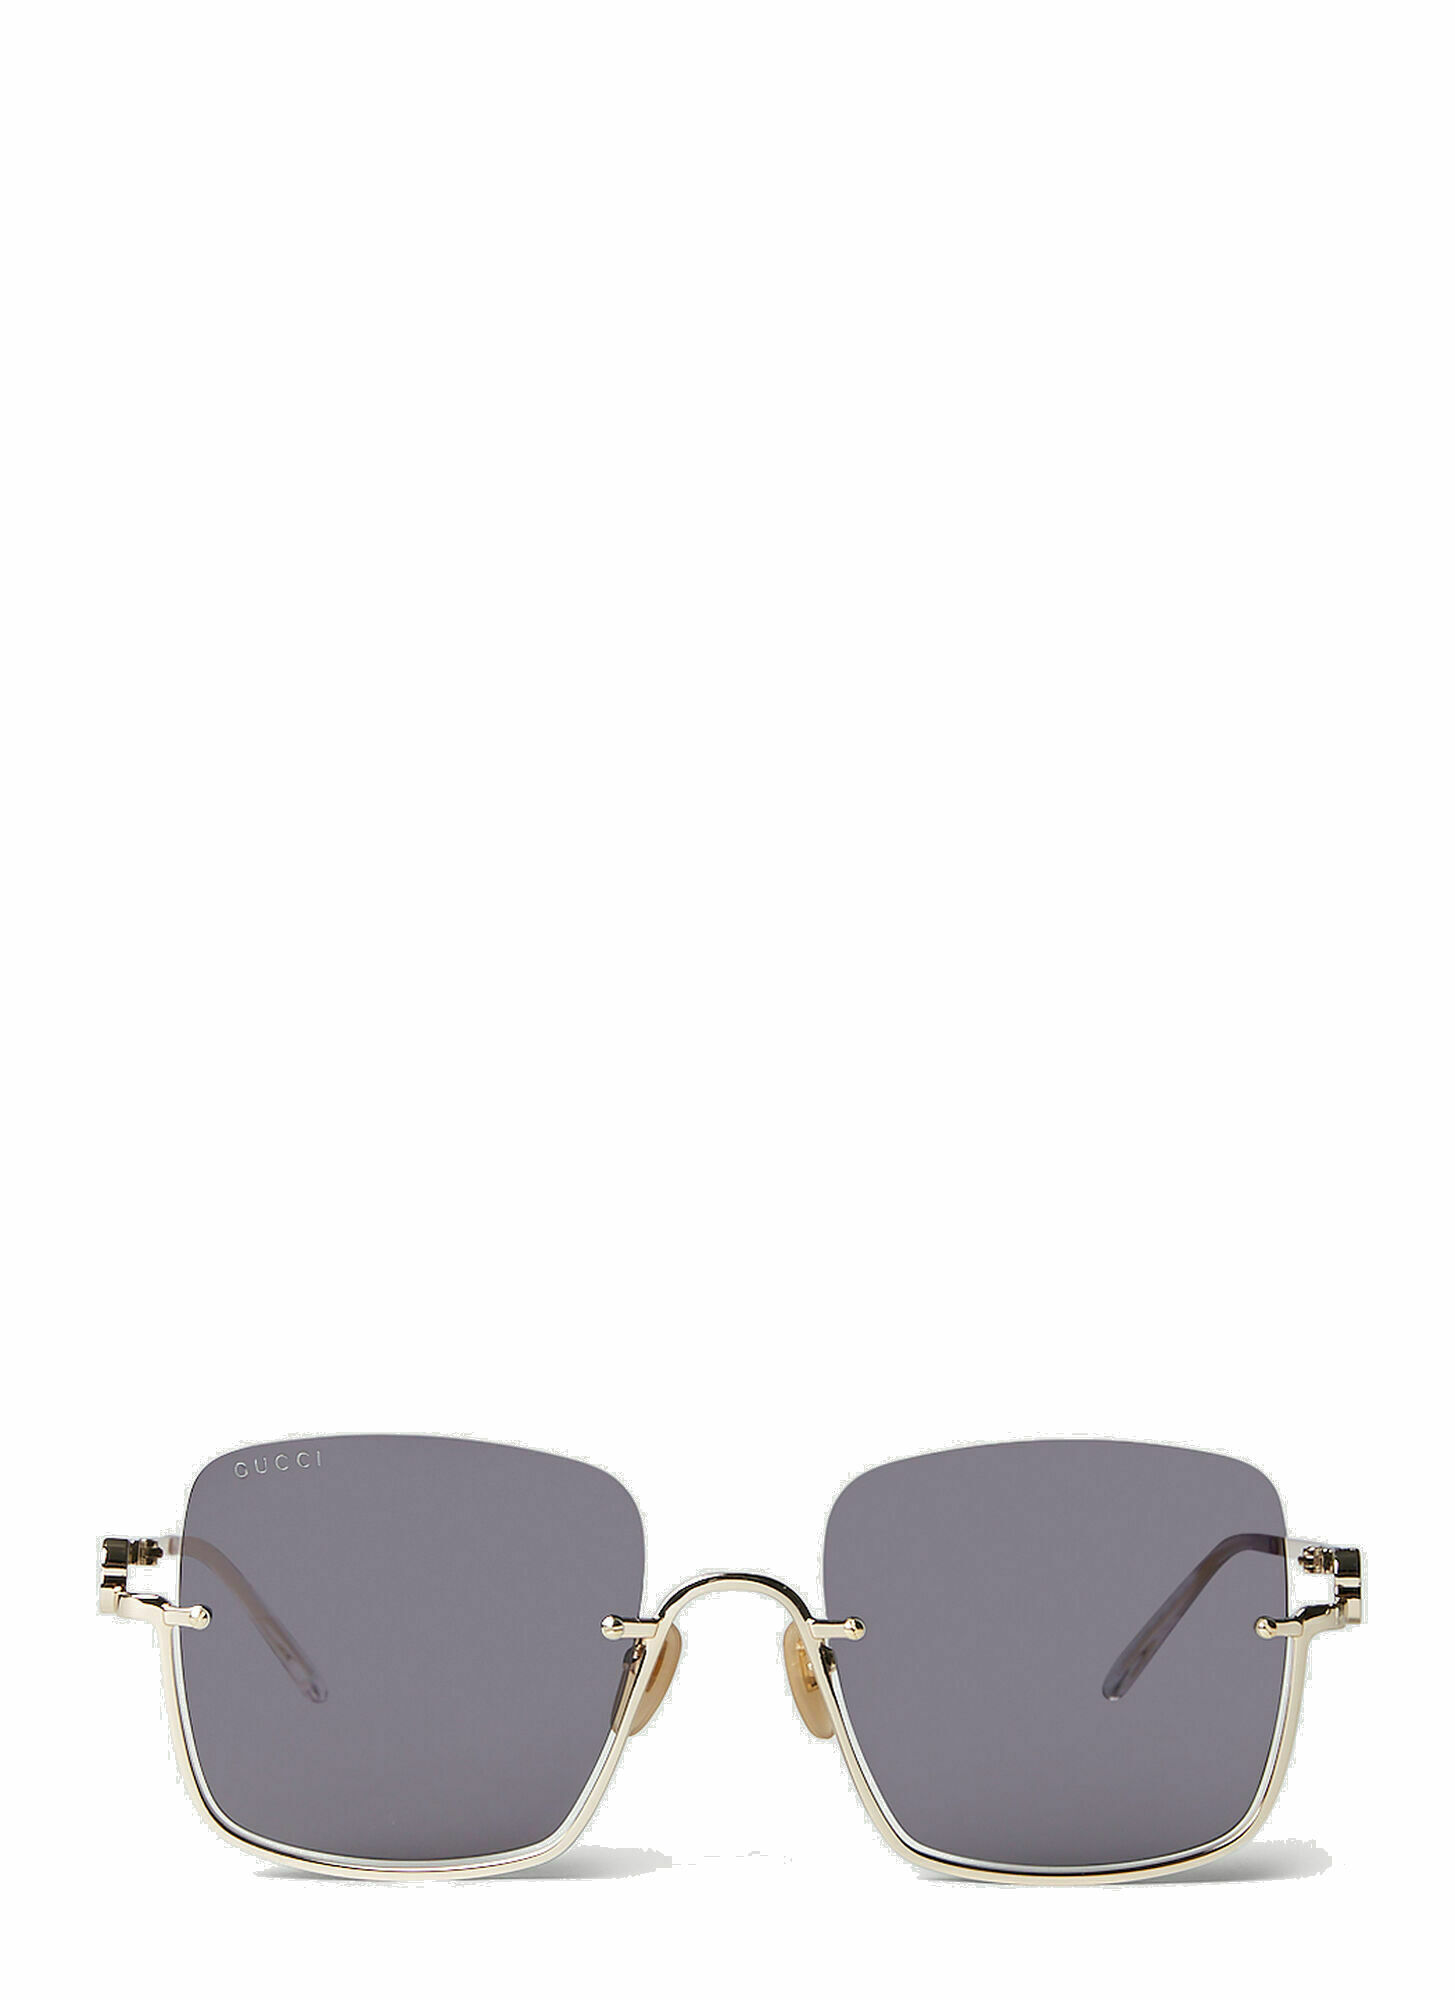 Gucci - GG1279S Square Sunglasses in Gold Gucci